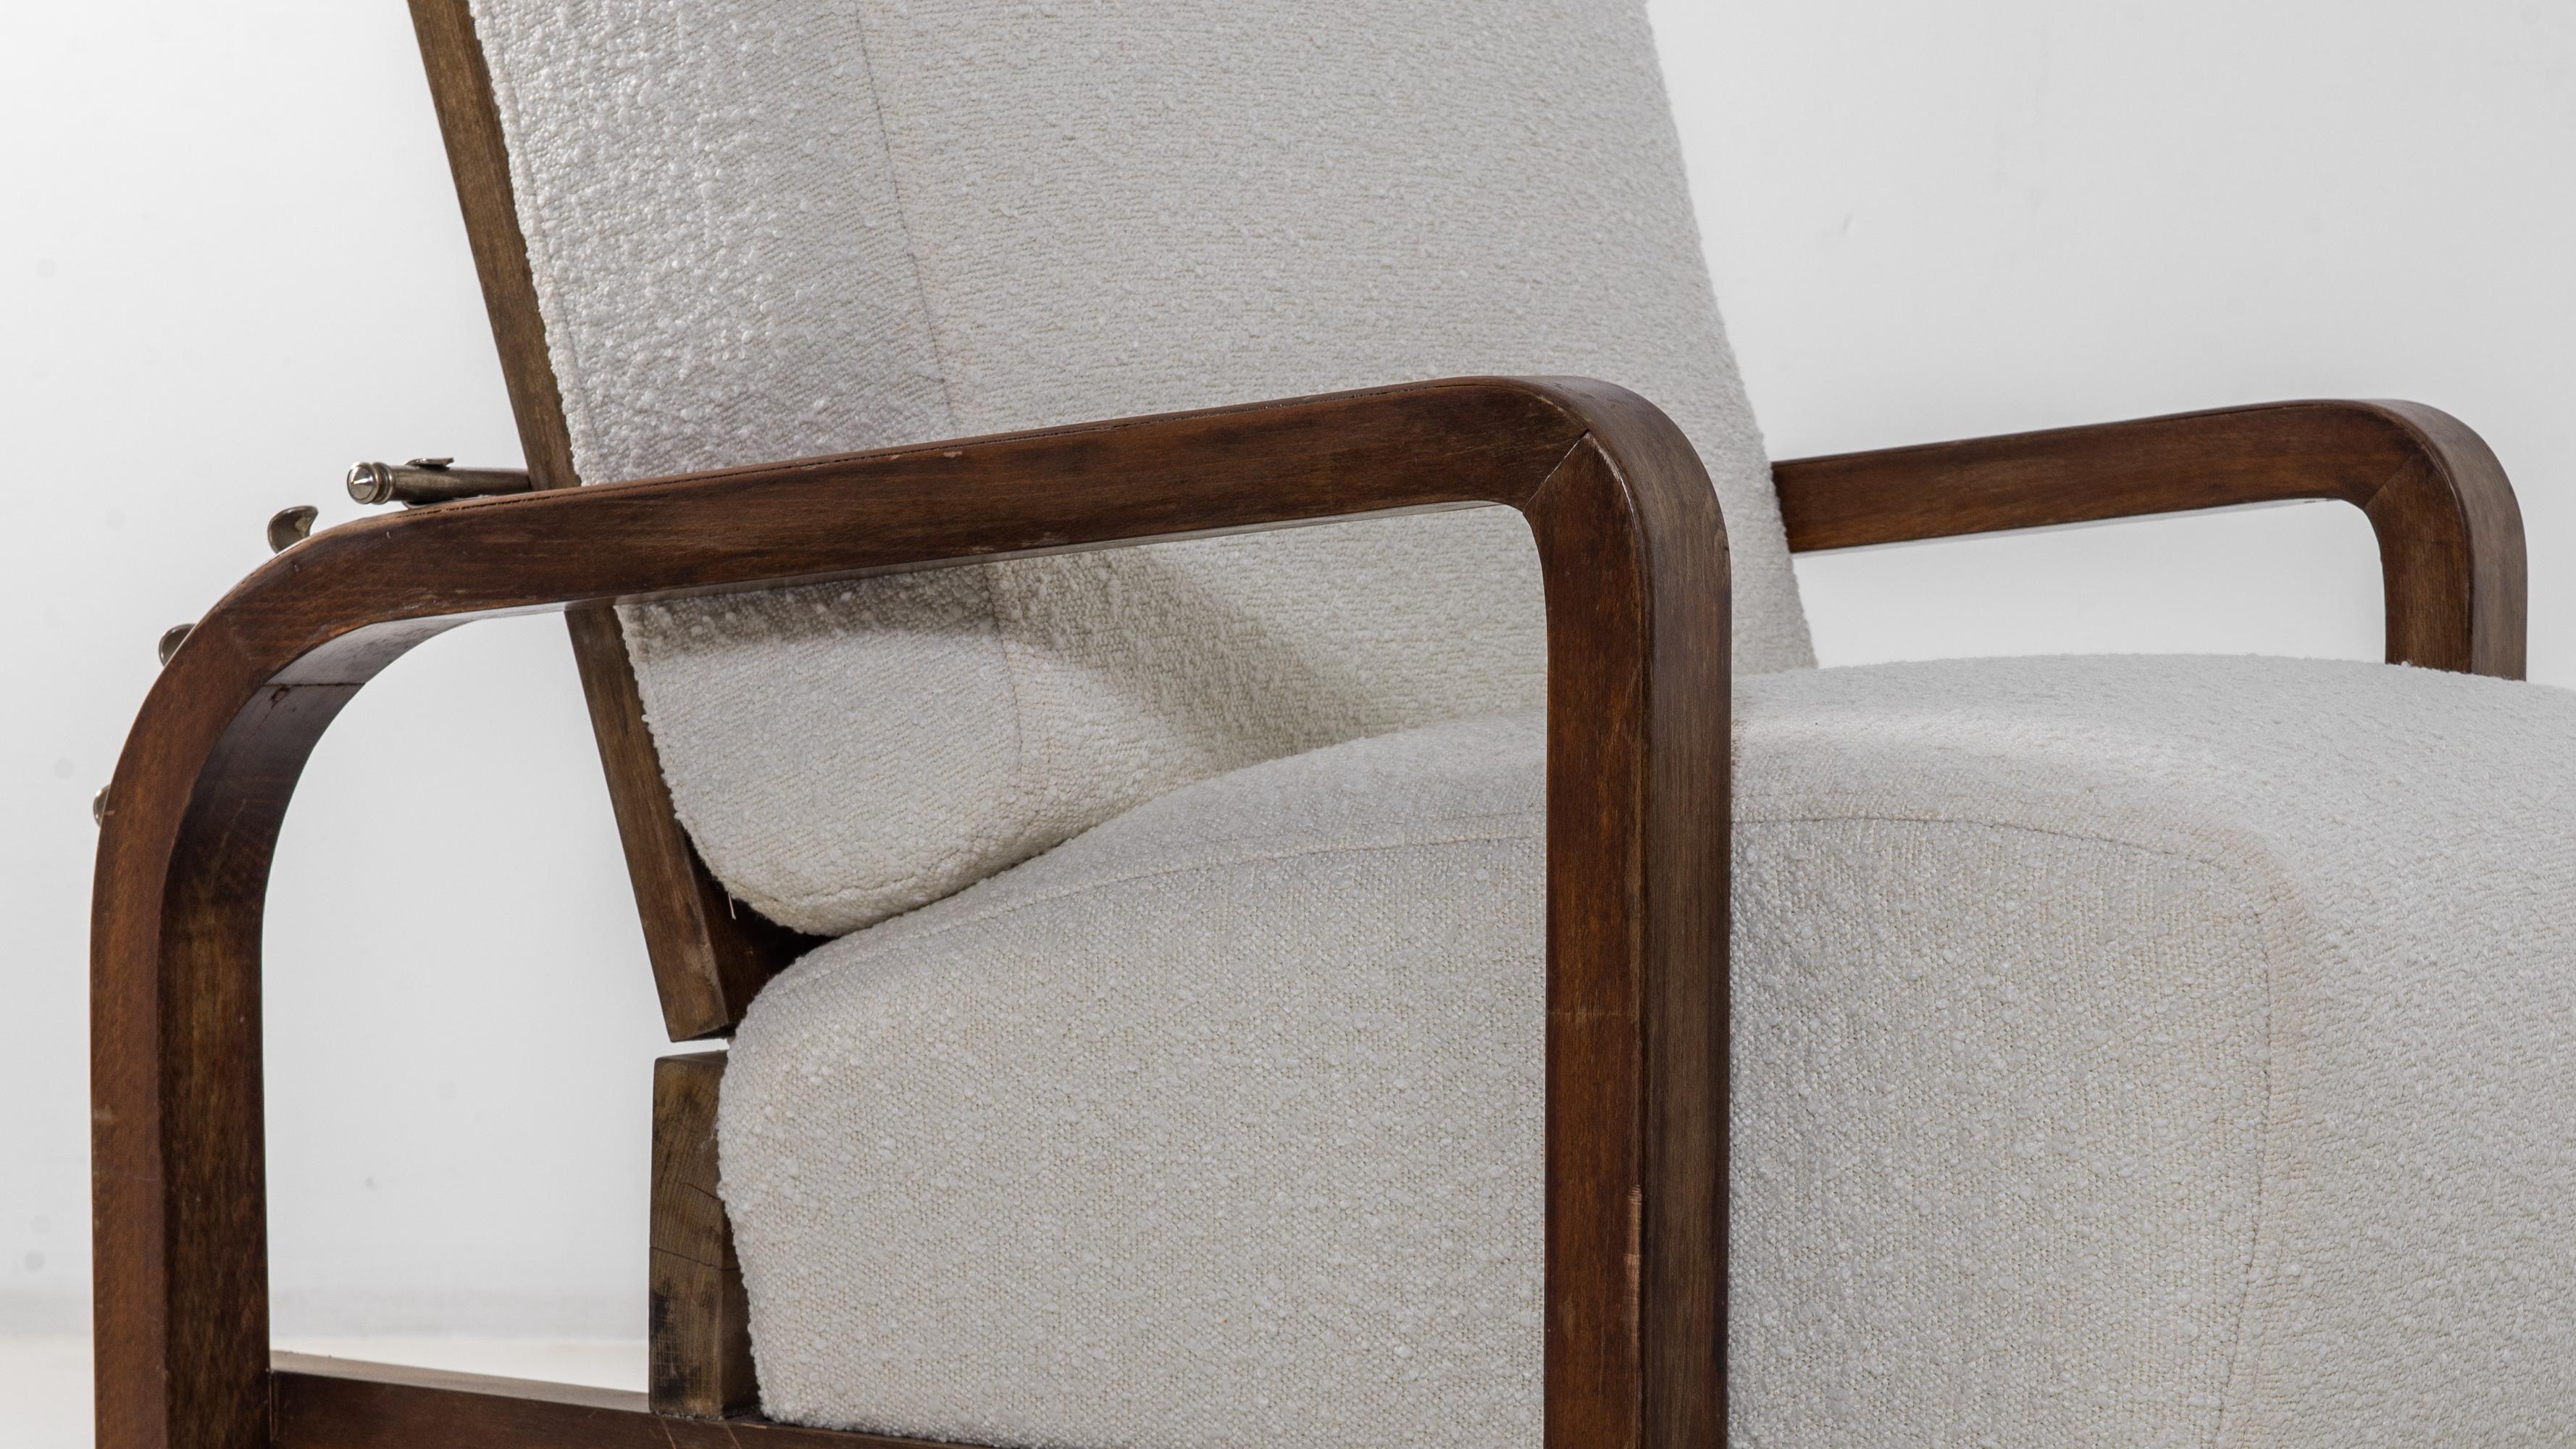 Le design unique de ce fauteuil lui confère une personnalité intrigante et délicieuse. Fabriqué en Europe centrale dans les années 1930, le siège bas se trouve à quelques centimètres du sol, la taille des coussins étant invraisemblablement grande